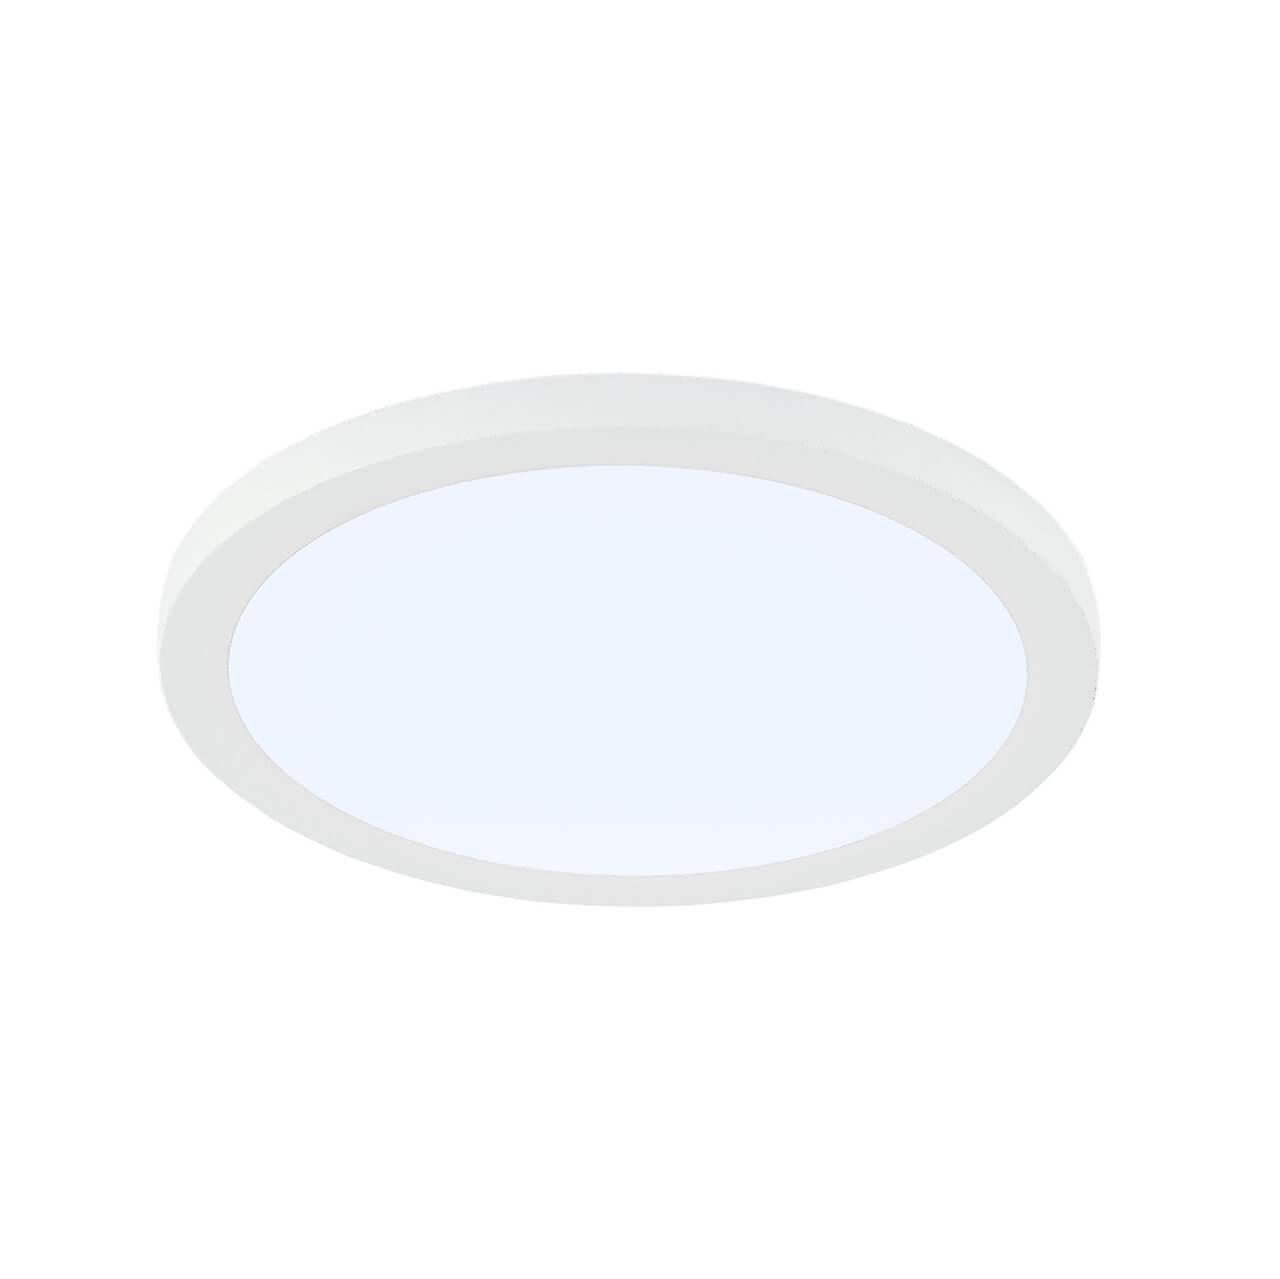 Citilux Омега CLD50R080N LED Встраиваемый светильник с диммером Белый citilux декарт cl704306 бра с бежевым абажуром и диммером